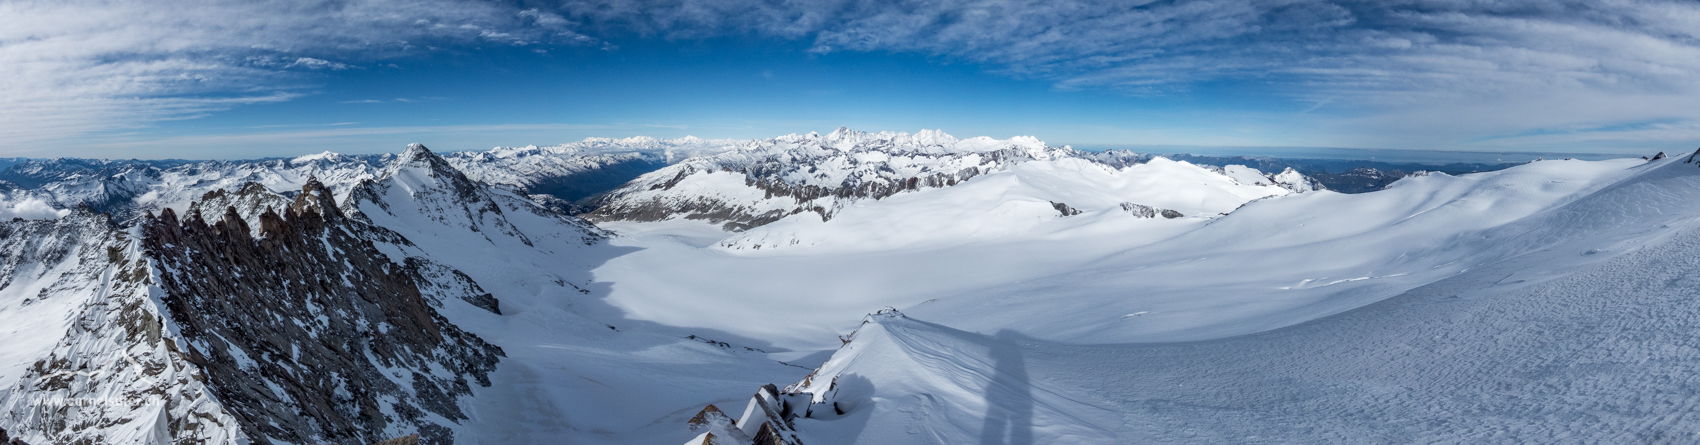 Aussicht auf dem Hinterer Rhonestock 3588m, Gletscherwelt und Schneewelt auf dem Rhonegletscher.